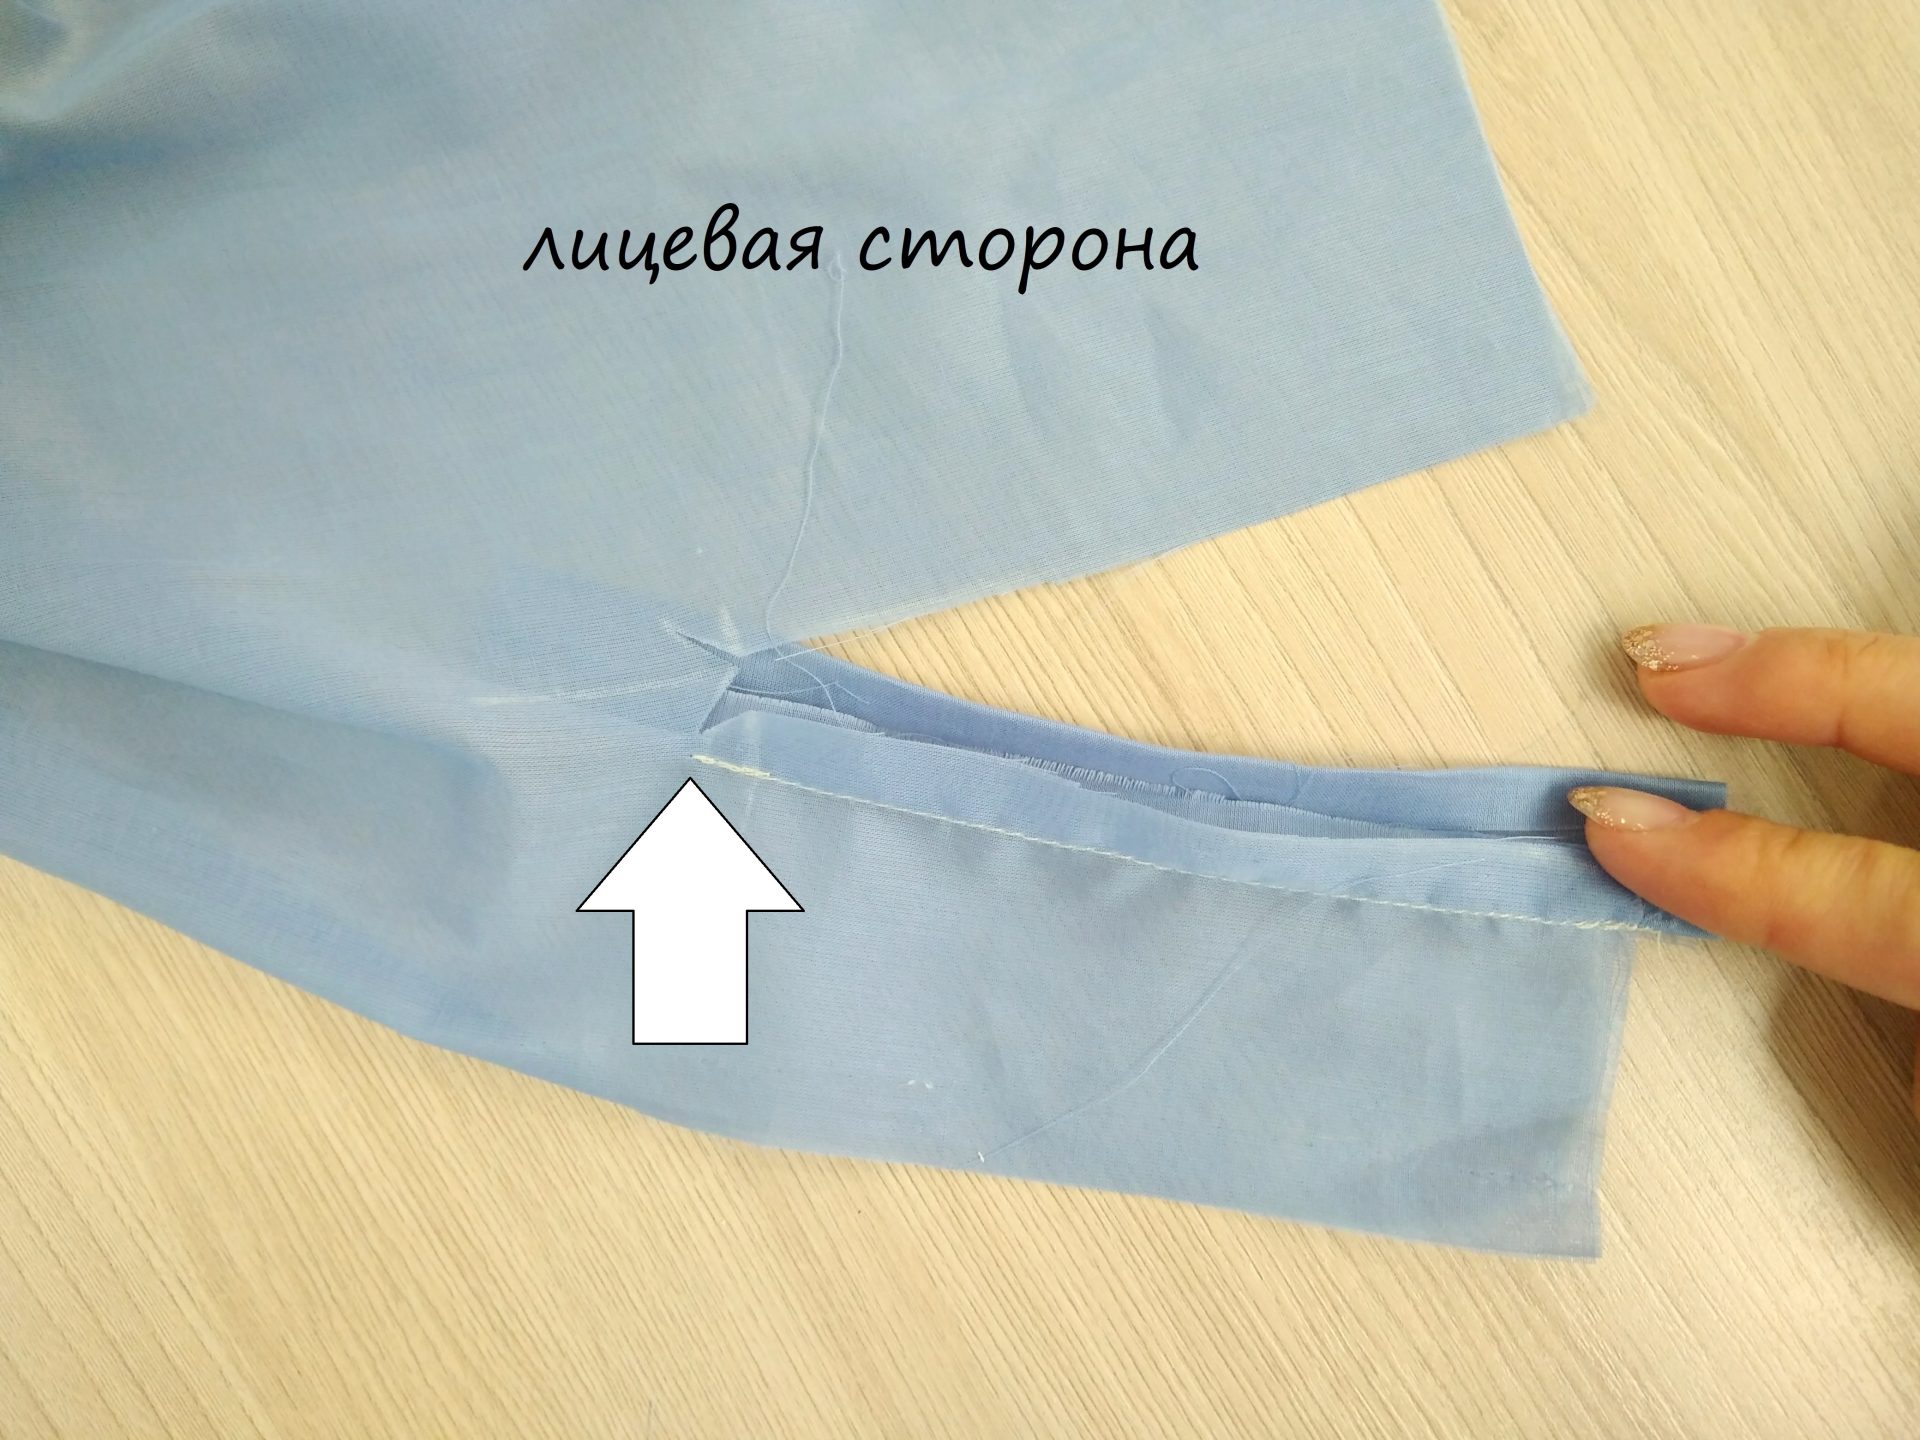 Как обработать планку рукава рубашки с манжетами пошагово